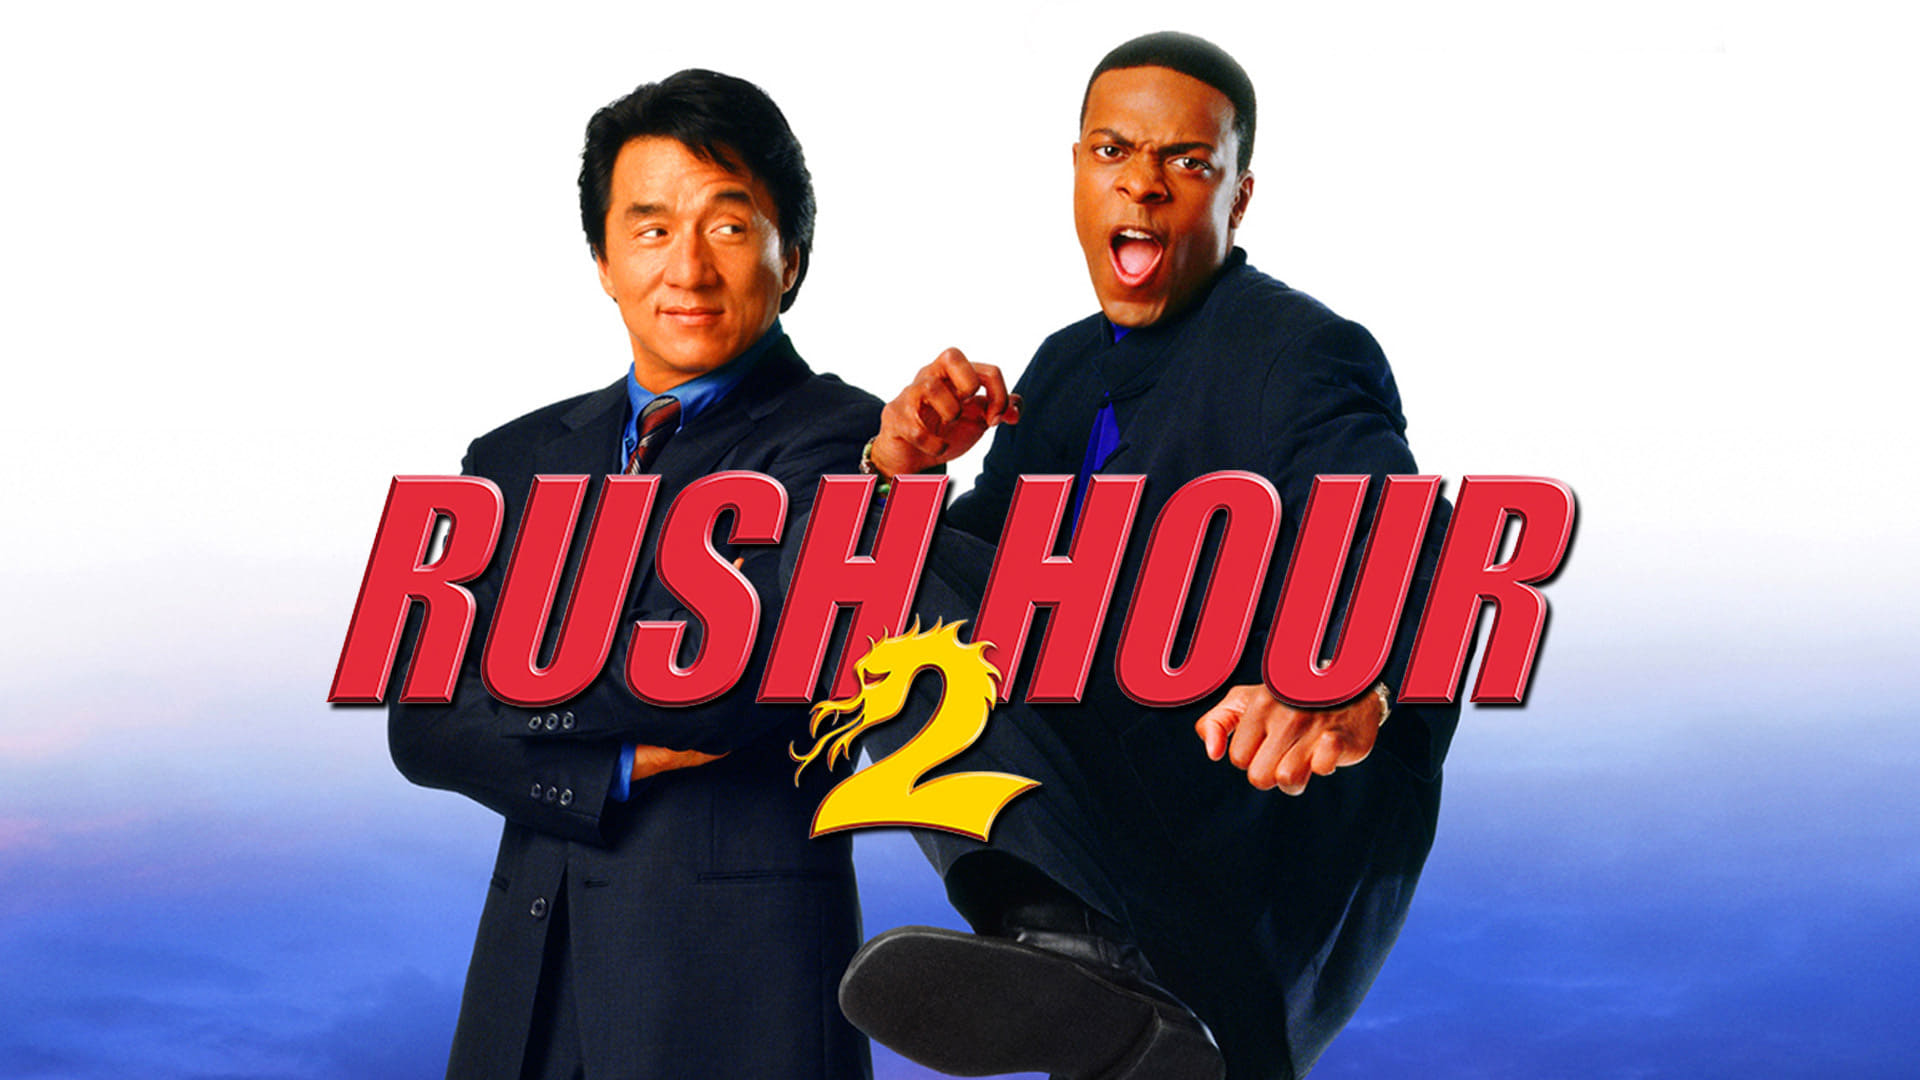 Rush Hour 2 (2001) - Inspektør Lee fra Hong Kong politi og Los